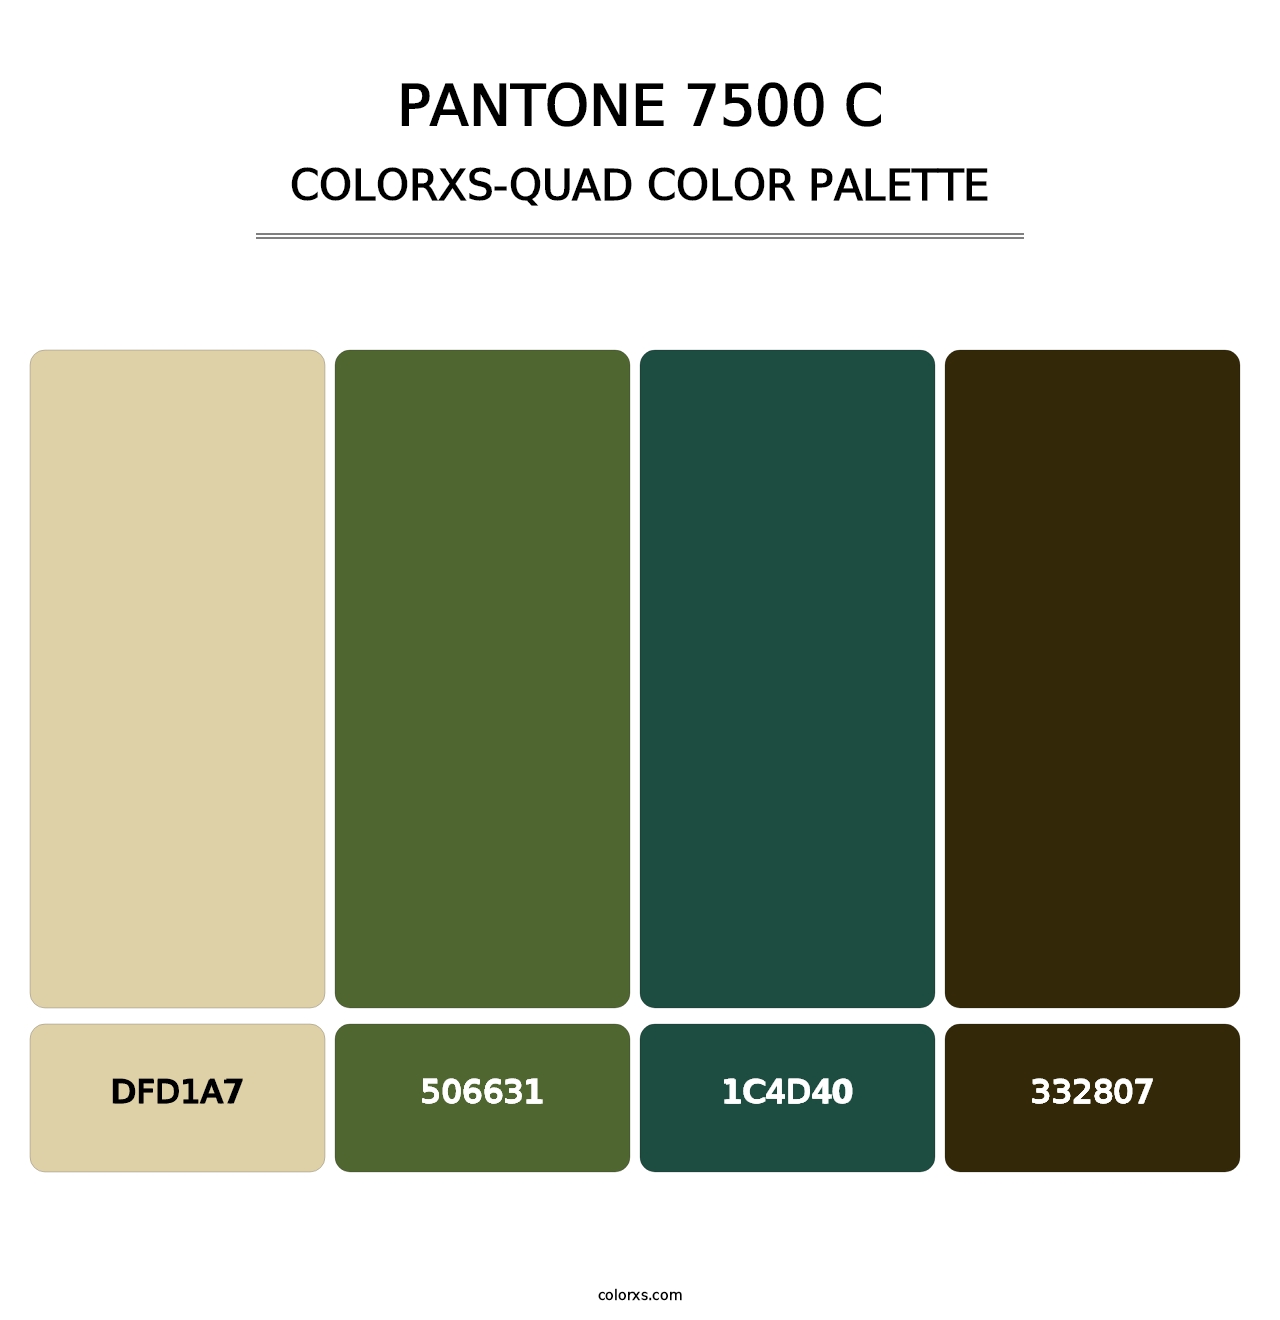 PANTONE 7500 C - Colorxs Quad Palette